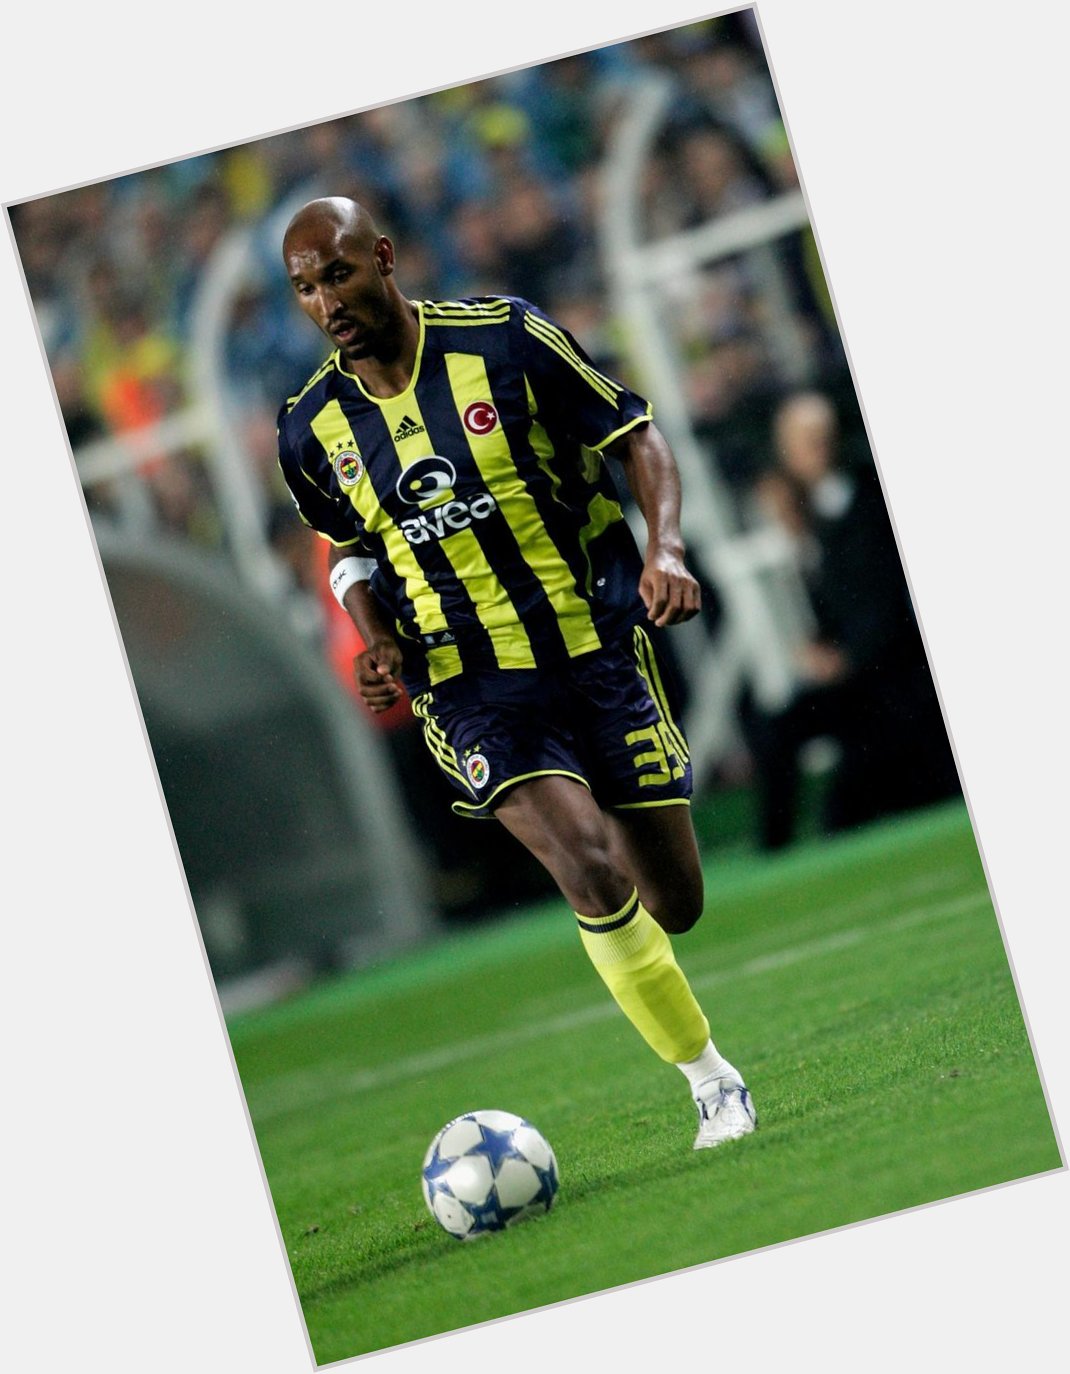 Unutursak kalbimiz kurusun!
22 Nisan 2006 Fenerbahçe 4-0 Galatasaray
35 pas ve 4. Gol  Nicolas Anelka
Happy Birthday! 